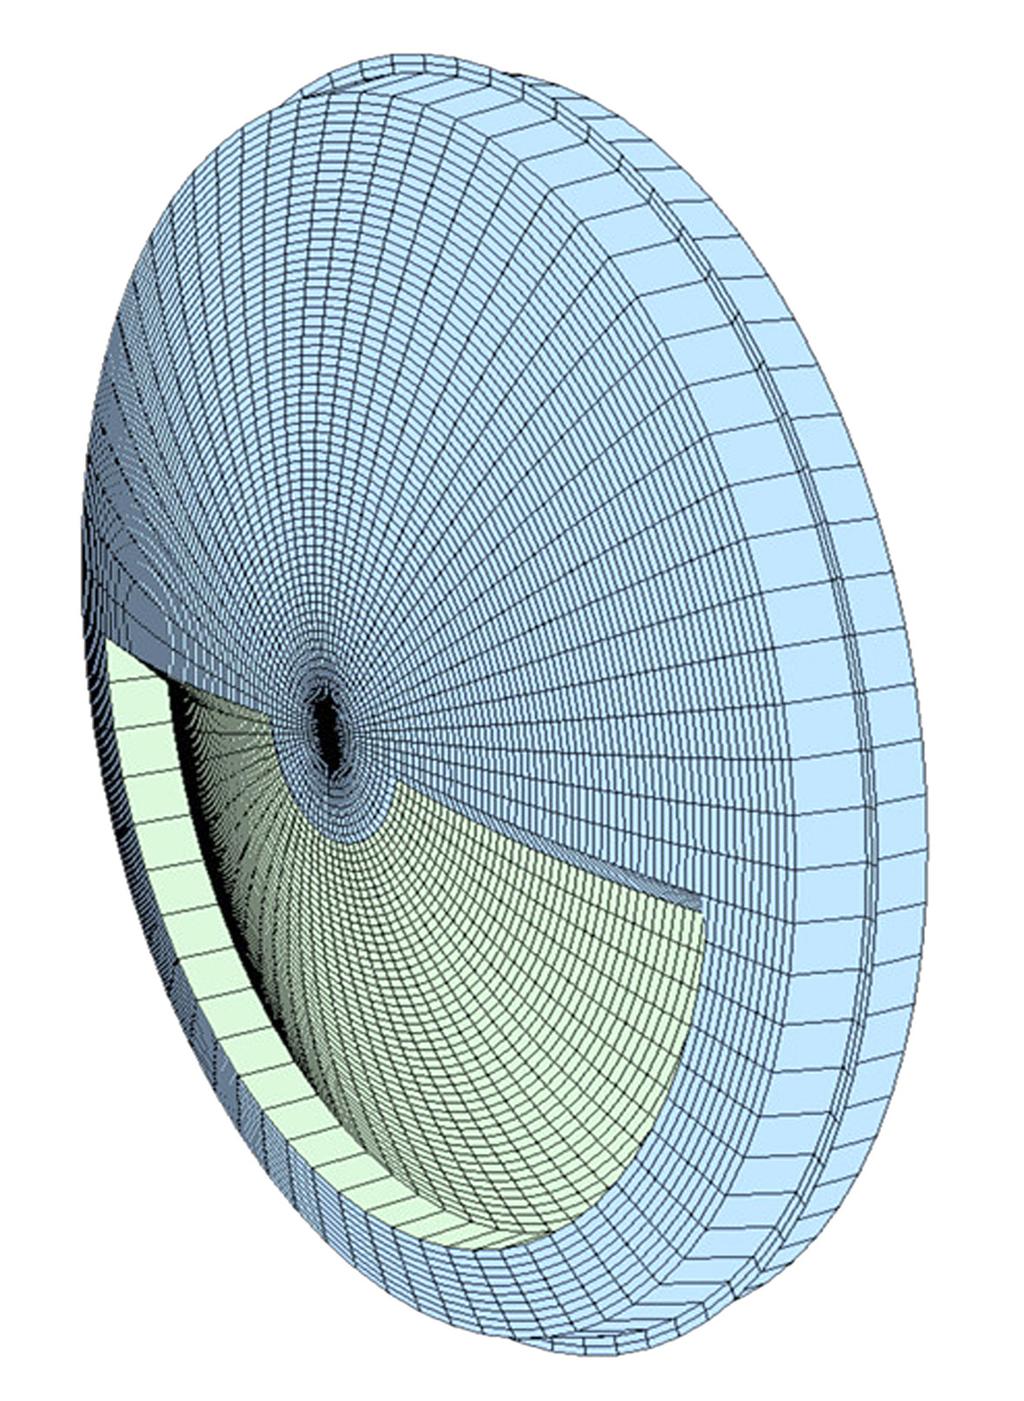 - 대한안과학회지 2014 년제 55 권제 4 호 - Figure 4. M-plus multifocal intraocular lens design (seamless transition between near and far zone). 면은굴절력이서로달라 2개이상의초점을형성한다.